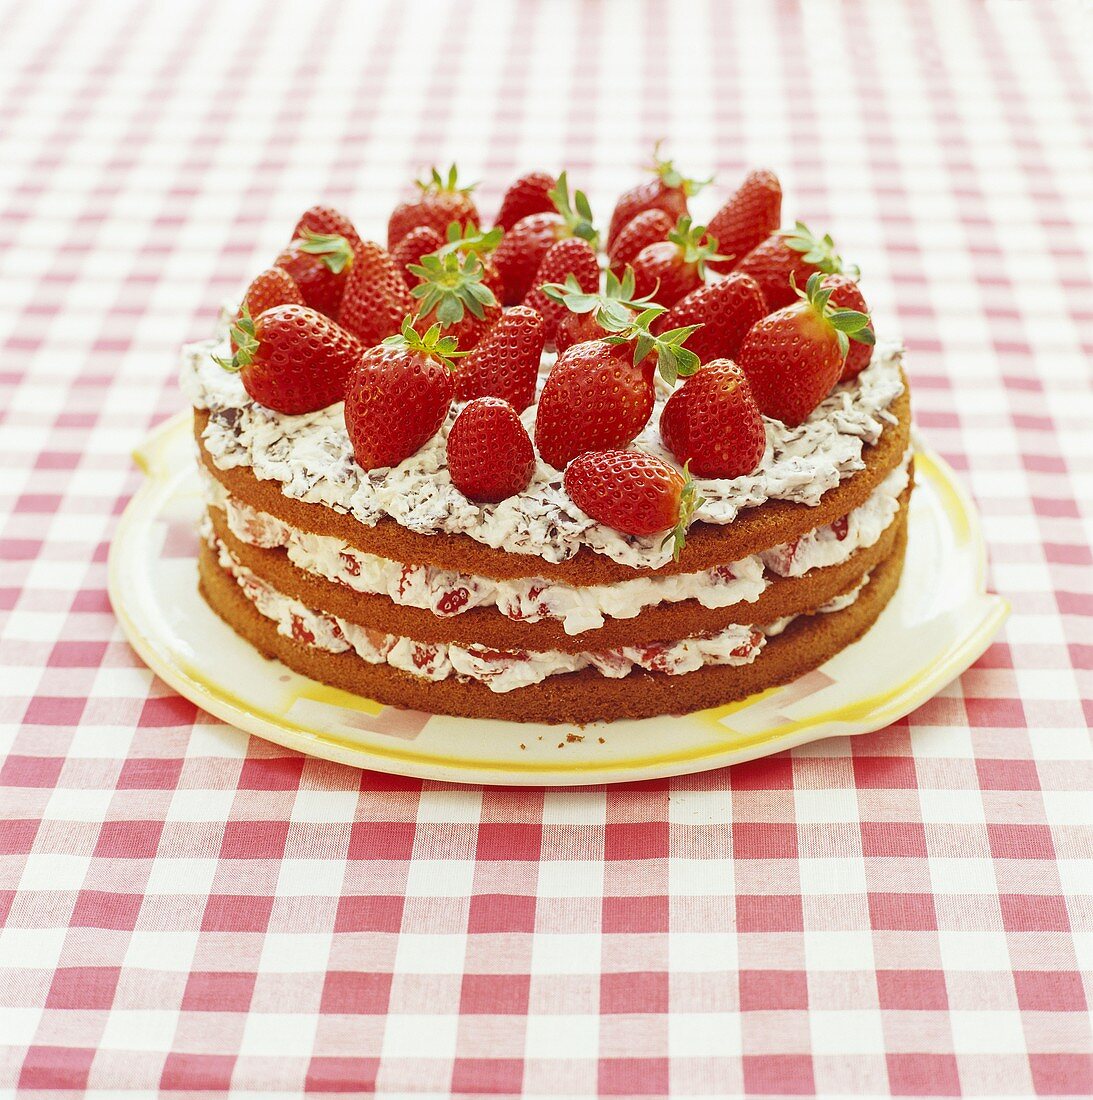 Erdbeer-Schokobiskuit-Torte, garniert mit frischen Erdbeeren